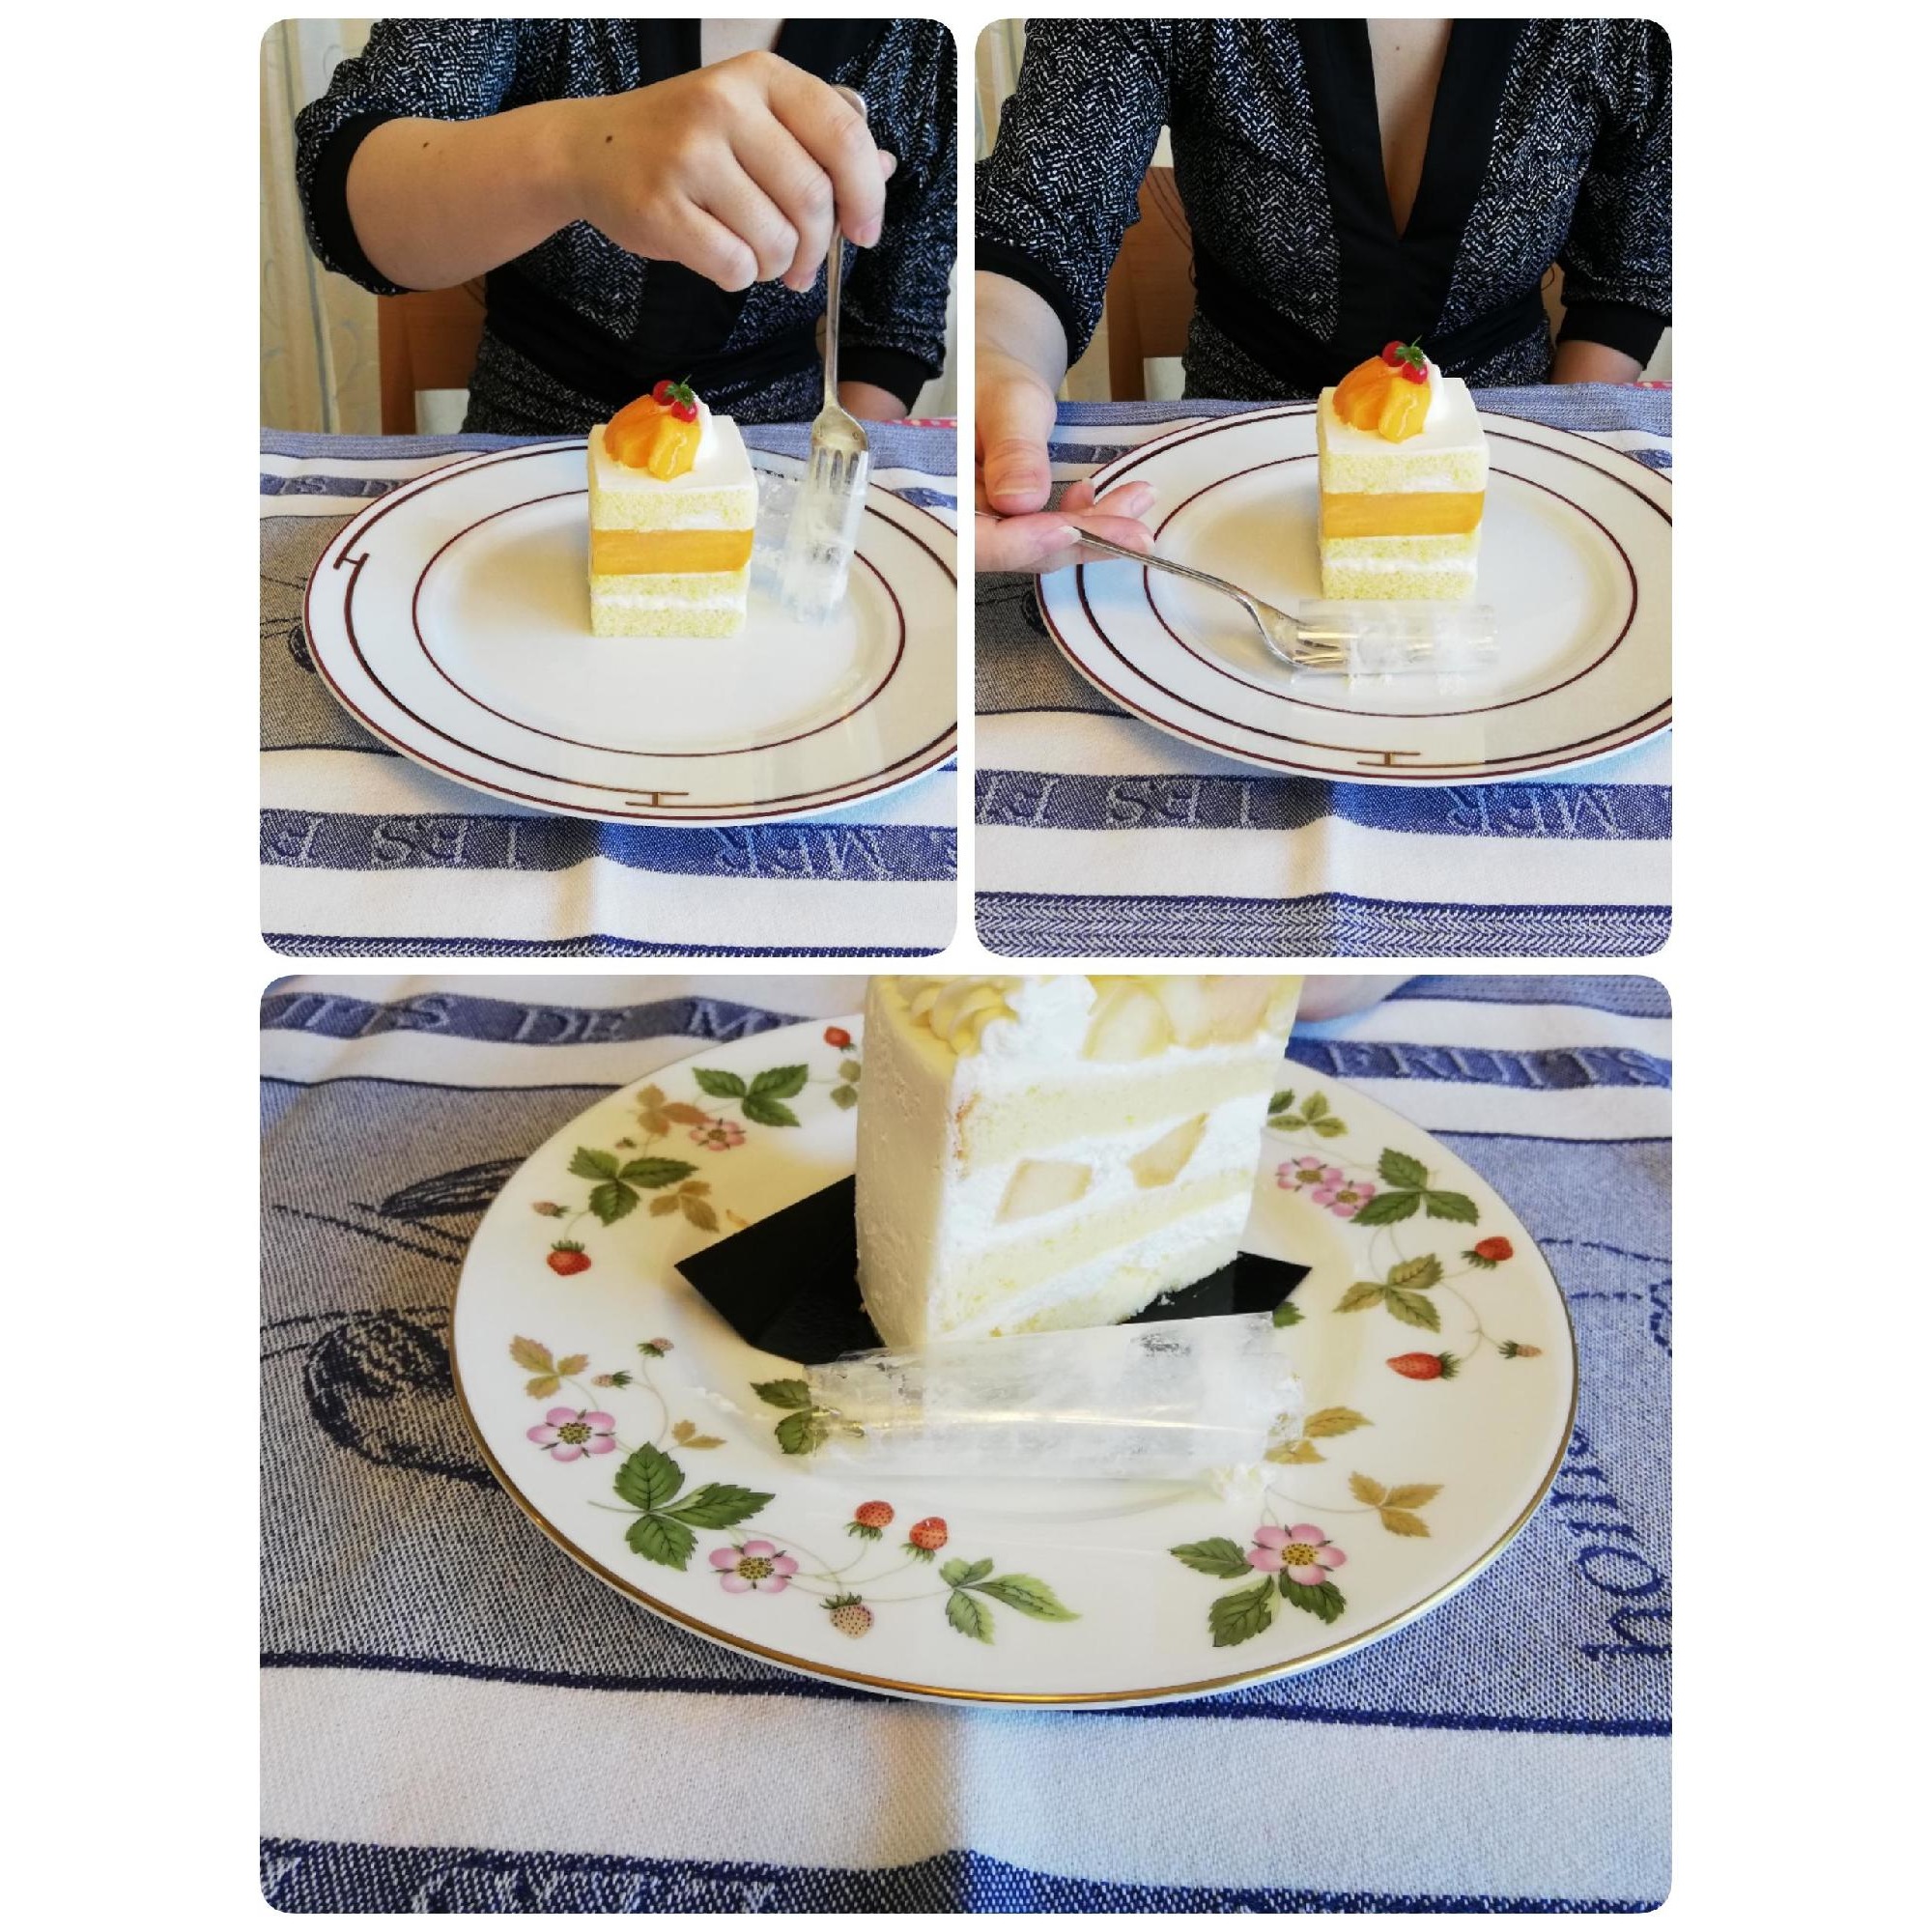 上品なようで間違いがちなテーブルマナー6 ケーキを食べるその前に ケーキを巻いているセロハンの外し方 マナー講師 石田宙子 マイベストプロ大阪